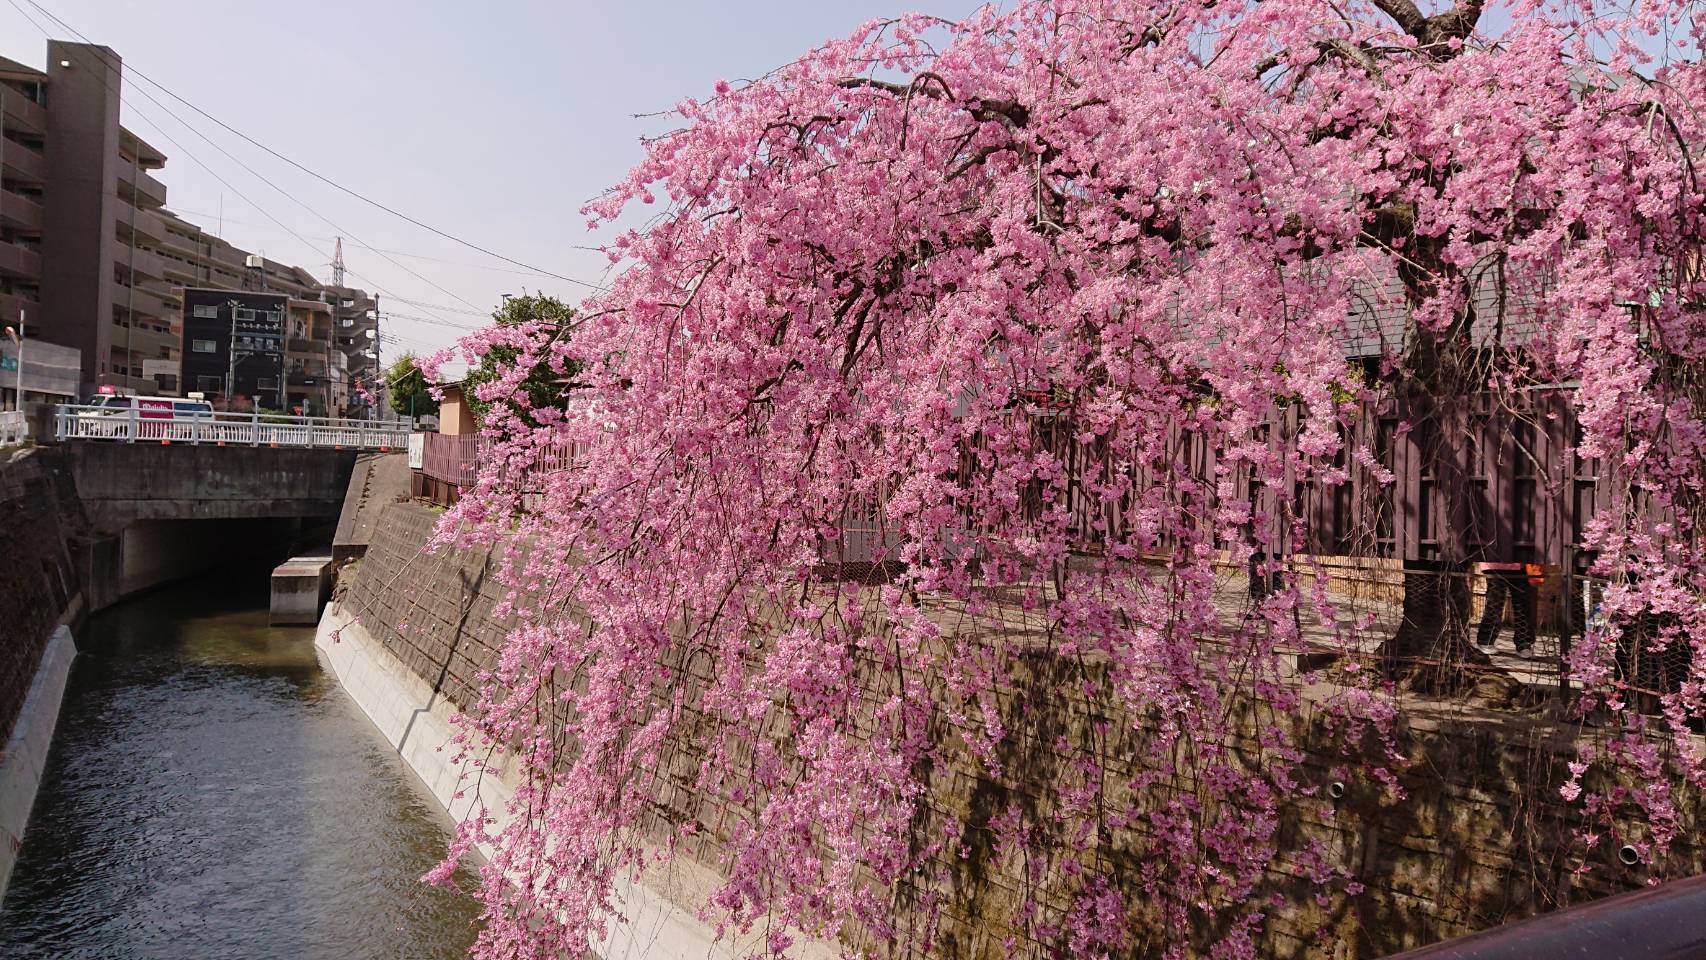 イマジン 仙台 石橋屋 のイロハモミジ いろは紅葉 と しだれ桜 この時期の仙台の風物詩です ここでは 春にモミジが赤く染まります 春のイロハモミジいいですよね秋とは また違う趣があります 花好きさんと繋がりたい イロハモミジ 仙台